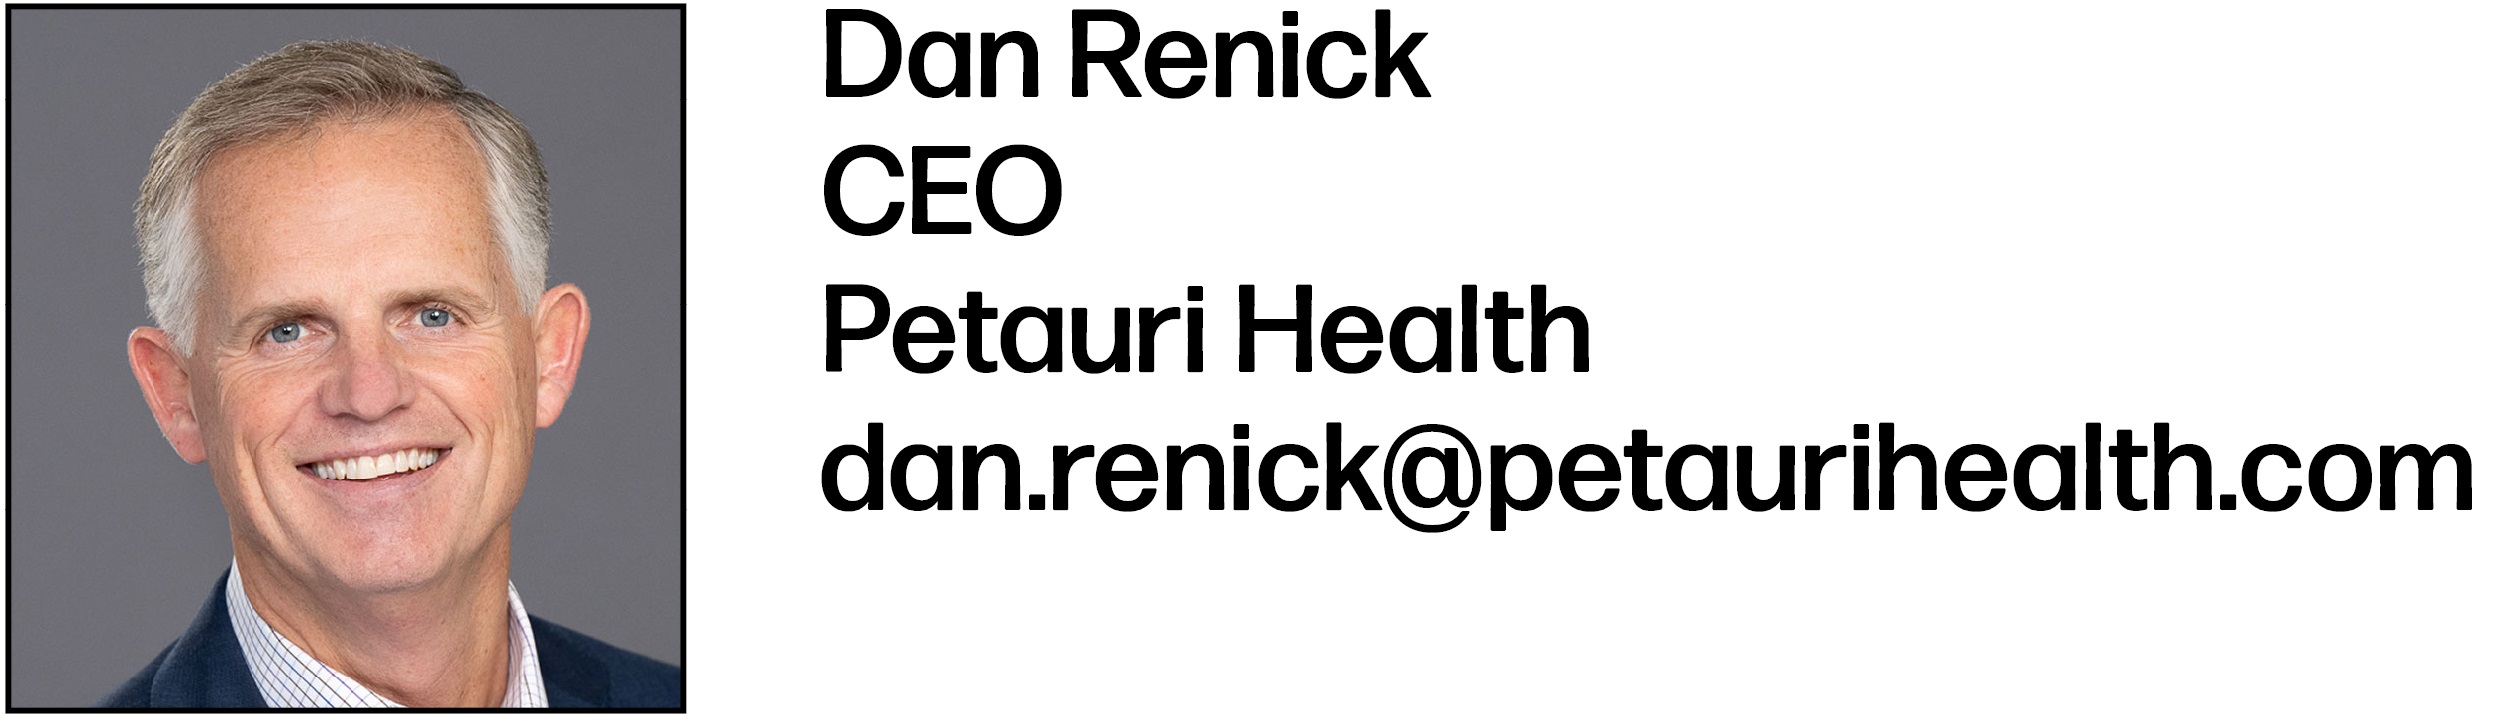 Dan Renick is CEO at Petauri Health. His email is dan.renick@petaurihealth.com.      